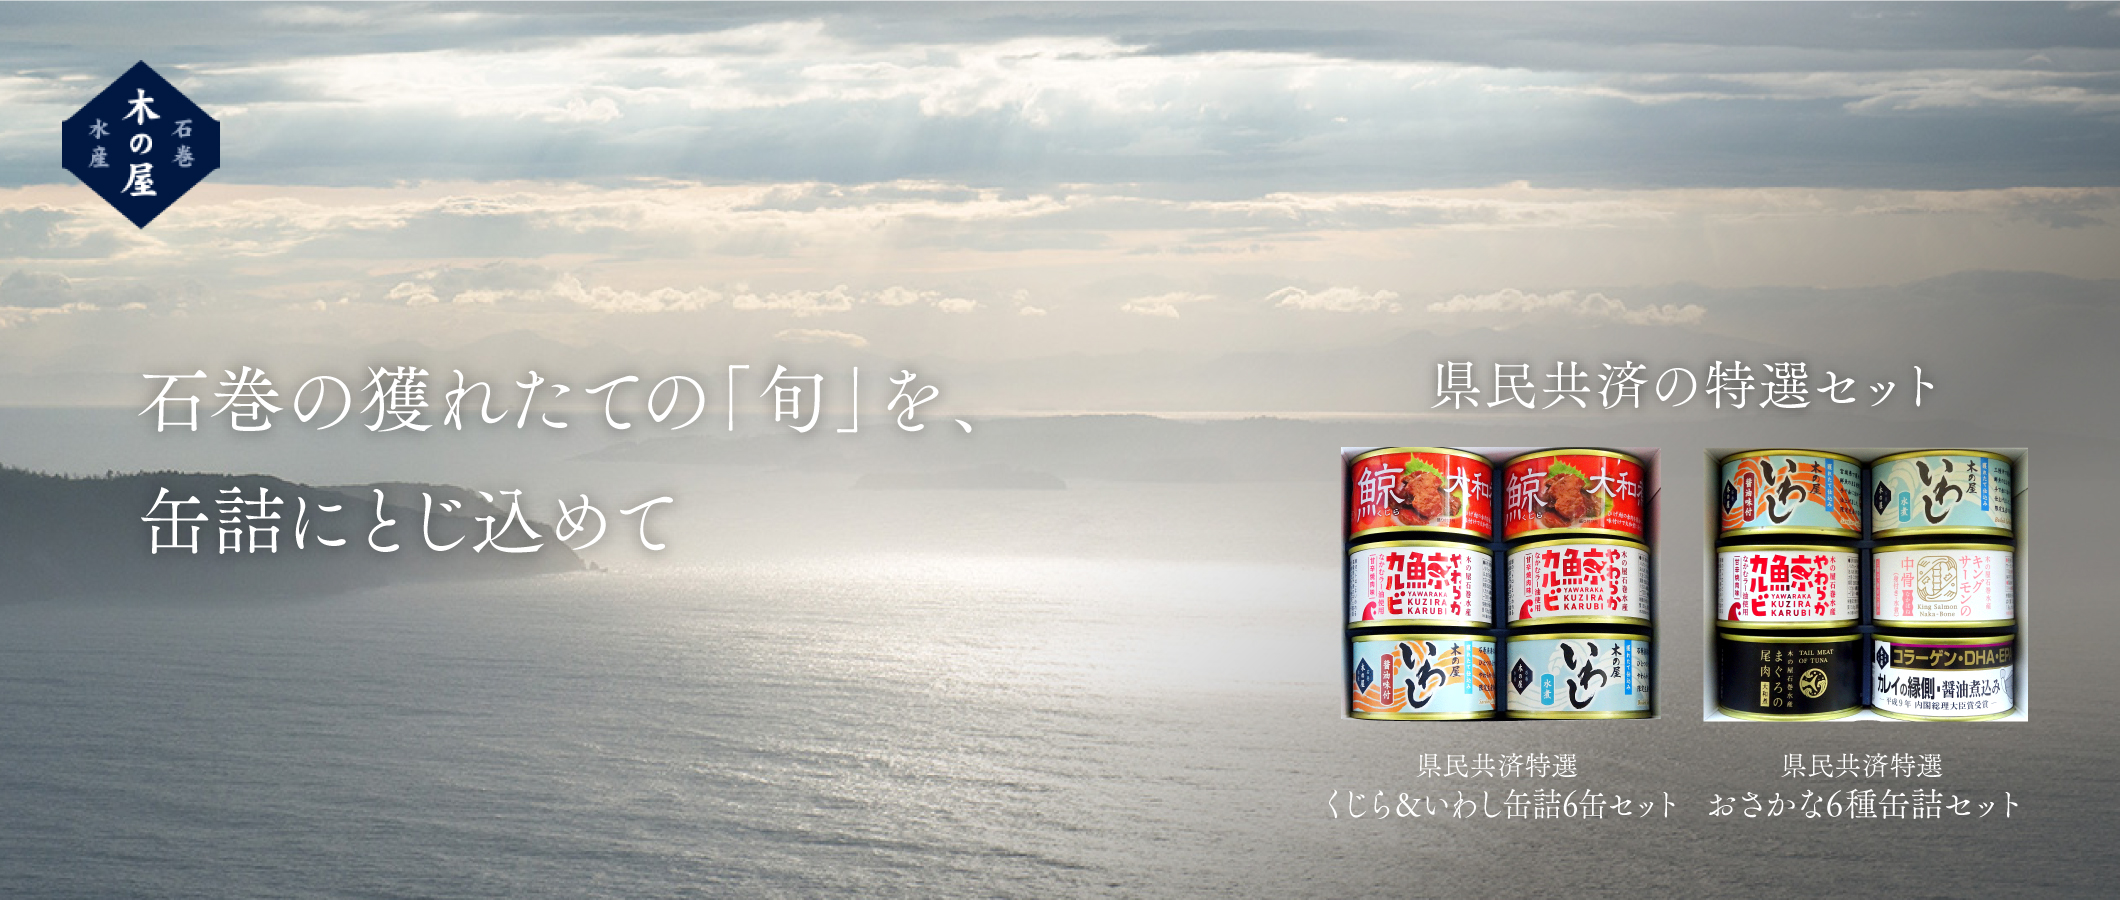 pc_kinoya_banner.jpg